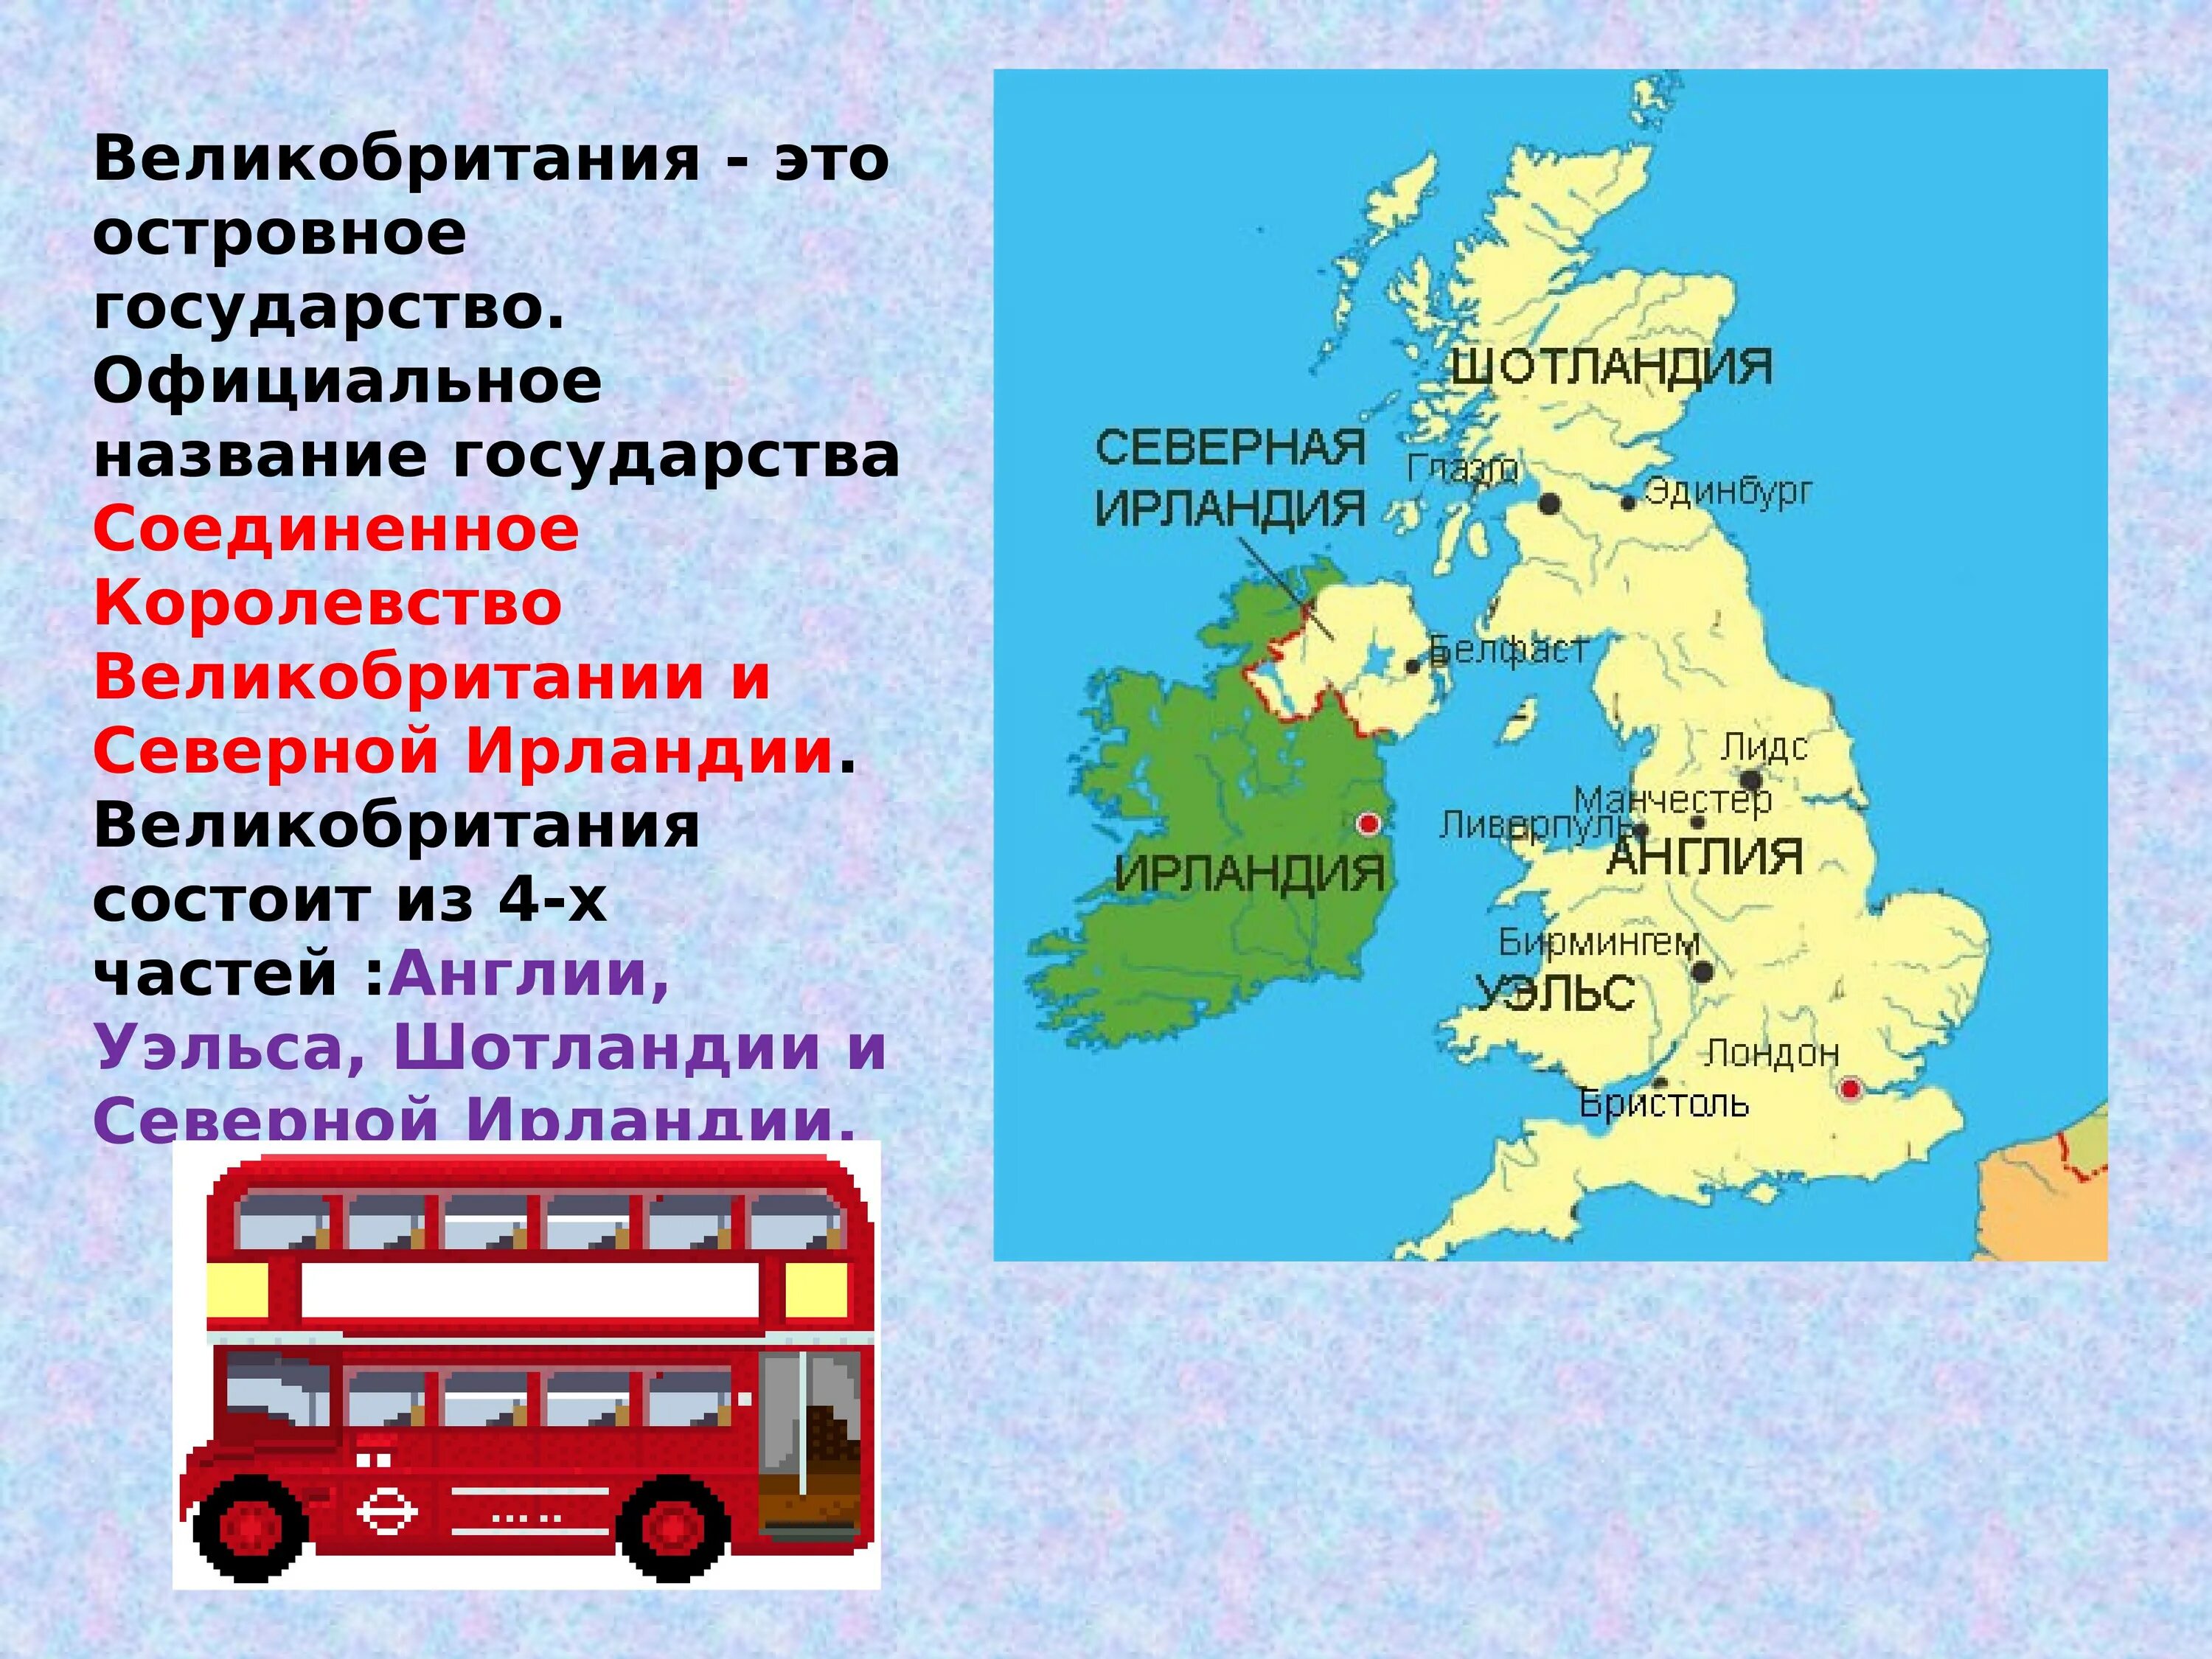 Англия страна часть великобритании и северной ирландии. Соединенное королевство Великобритании и Северной Ирландии карта. Из каких частей состоит Соединенное королевство Великобритании. Части Соединенного королевства Великобритании и их столицы. Столицы Соединенного королевства Великобритании и Северной Ирландии.